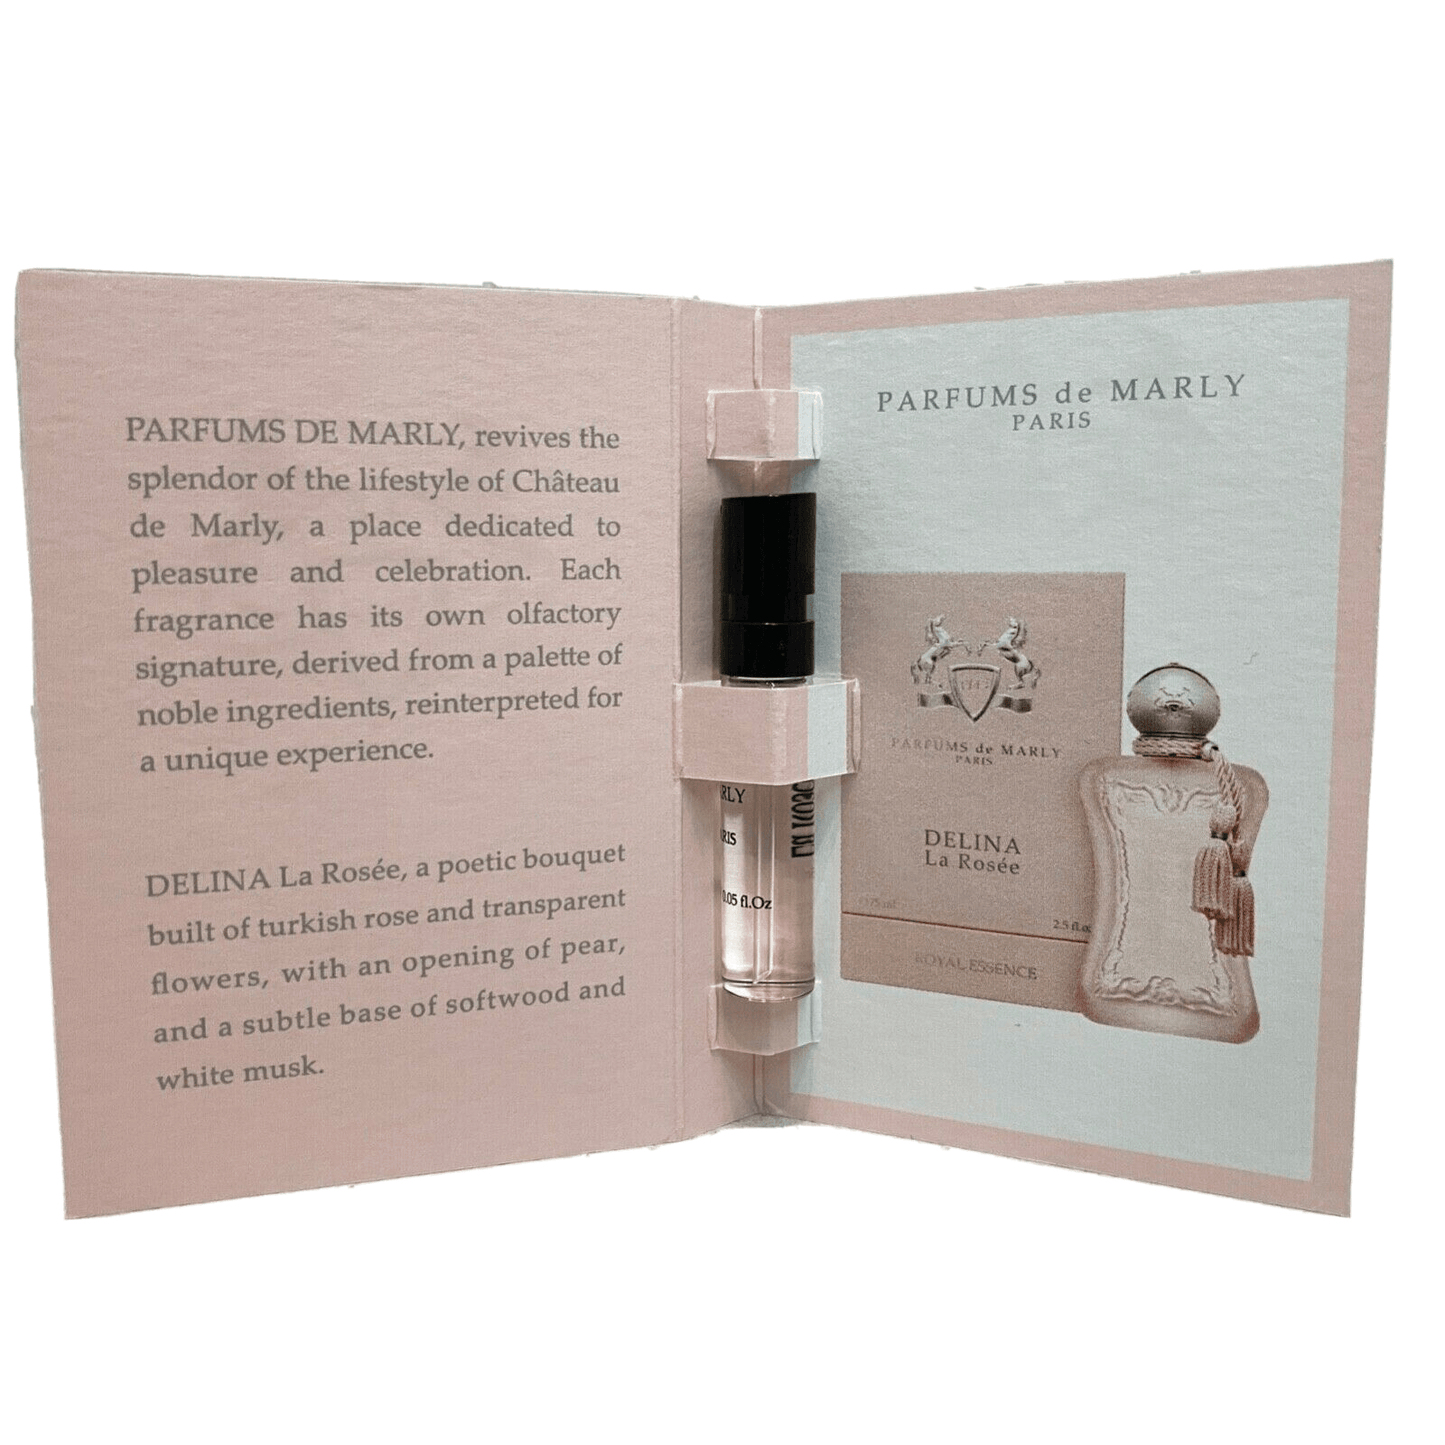 Επίσημο δείγμα αρώματος Parfums De Marly Delina La Rosee 1.5ml 0.05 φλ. ουγκιά